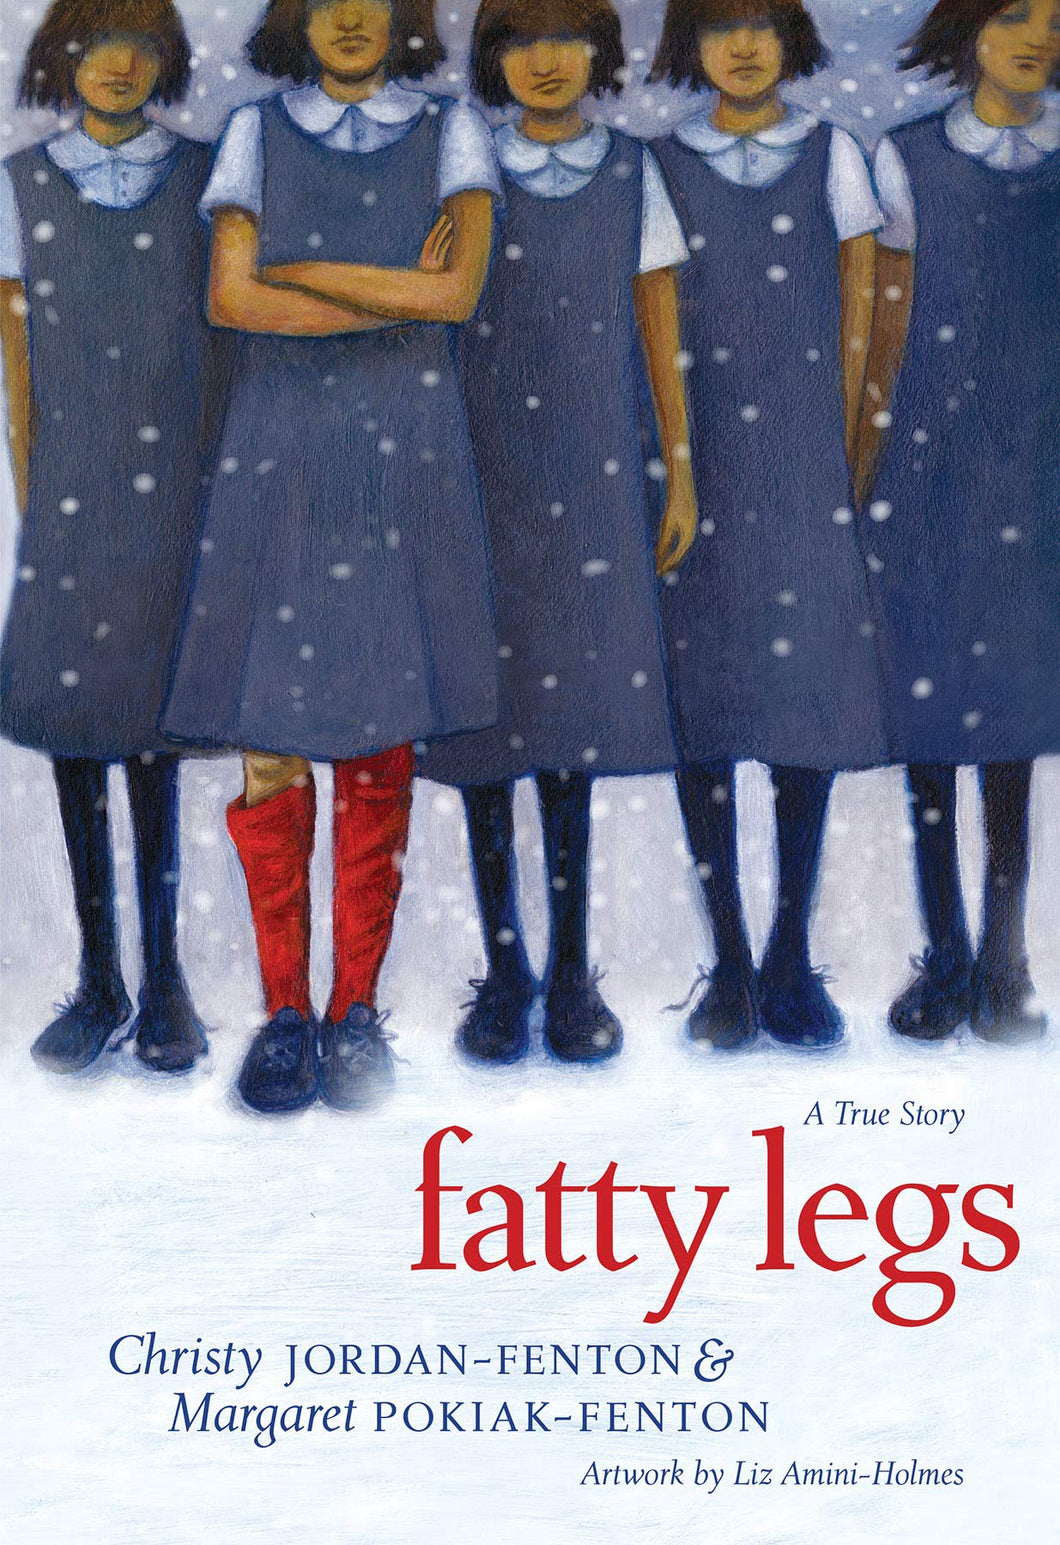 Fatty Legs [Christy Jordan-Fenton & Margaret-Olemaun Pokiak-Fenton]